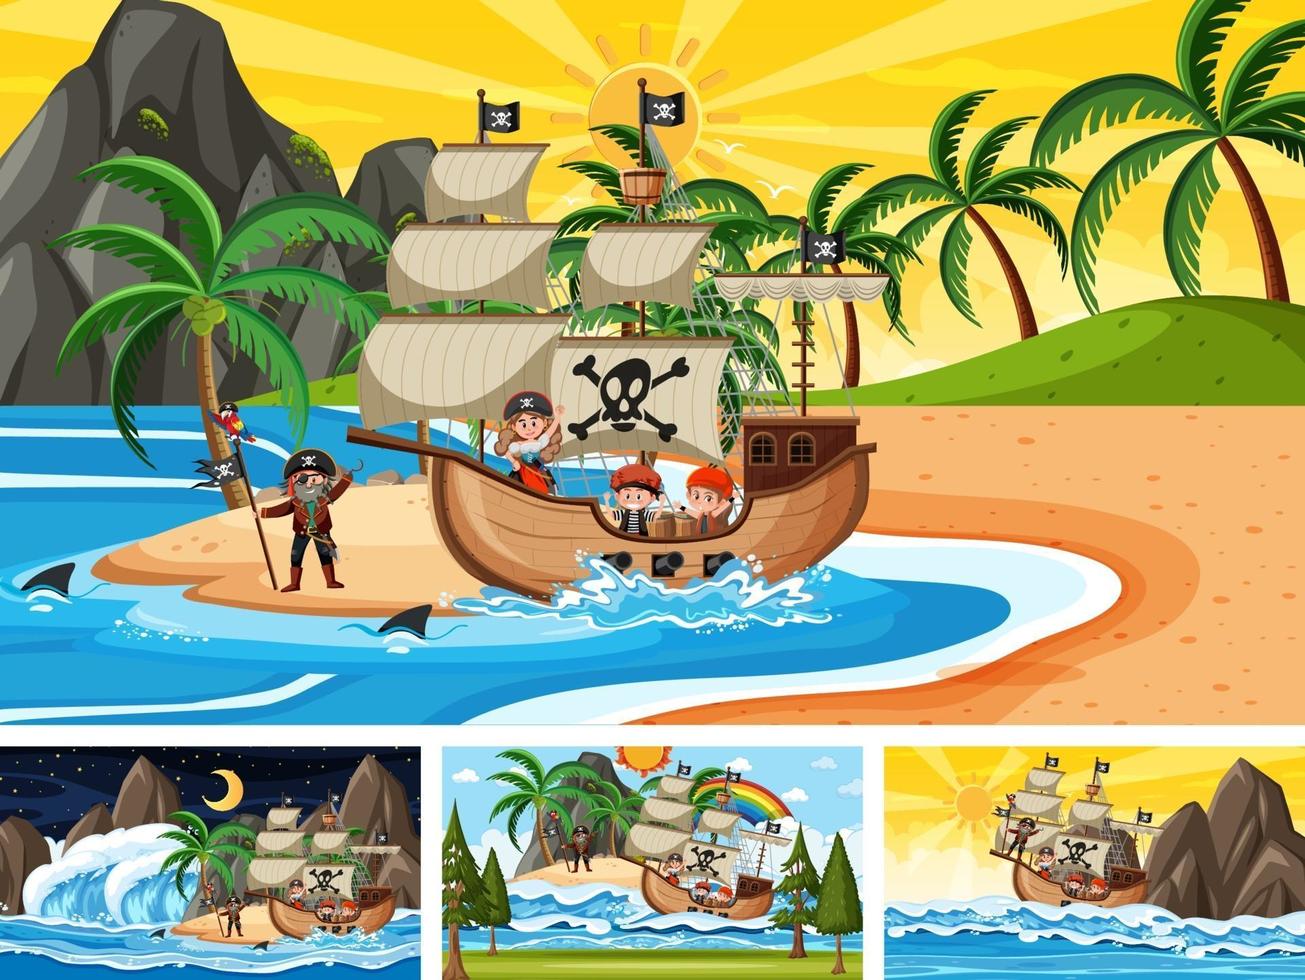 uppsättning av olika strandscener med piratskepp och pirattecknad karaktär vektor